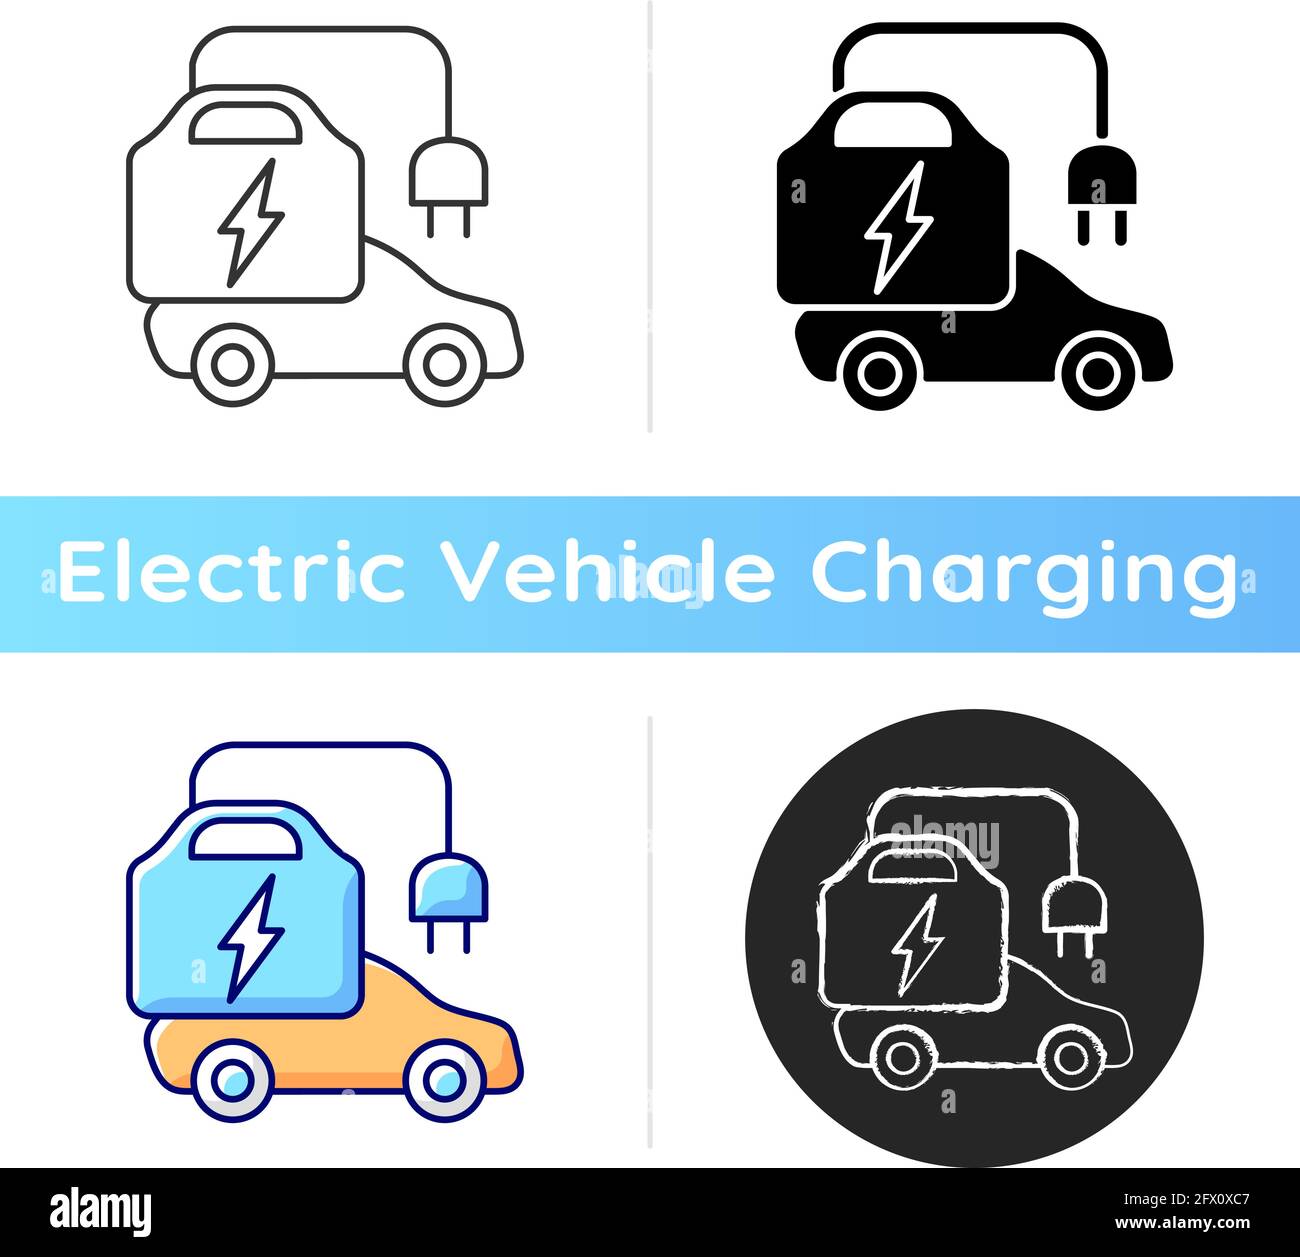 Portable EV charger icon Stock Vector